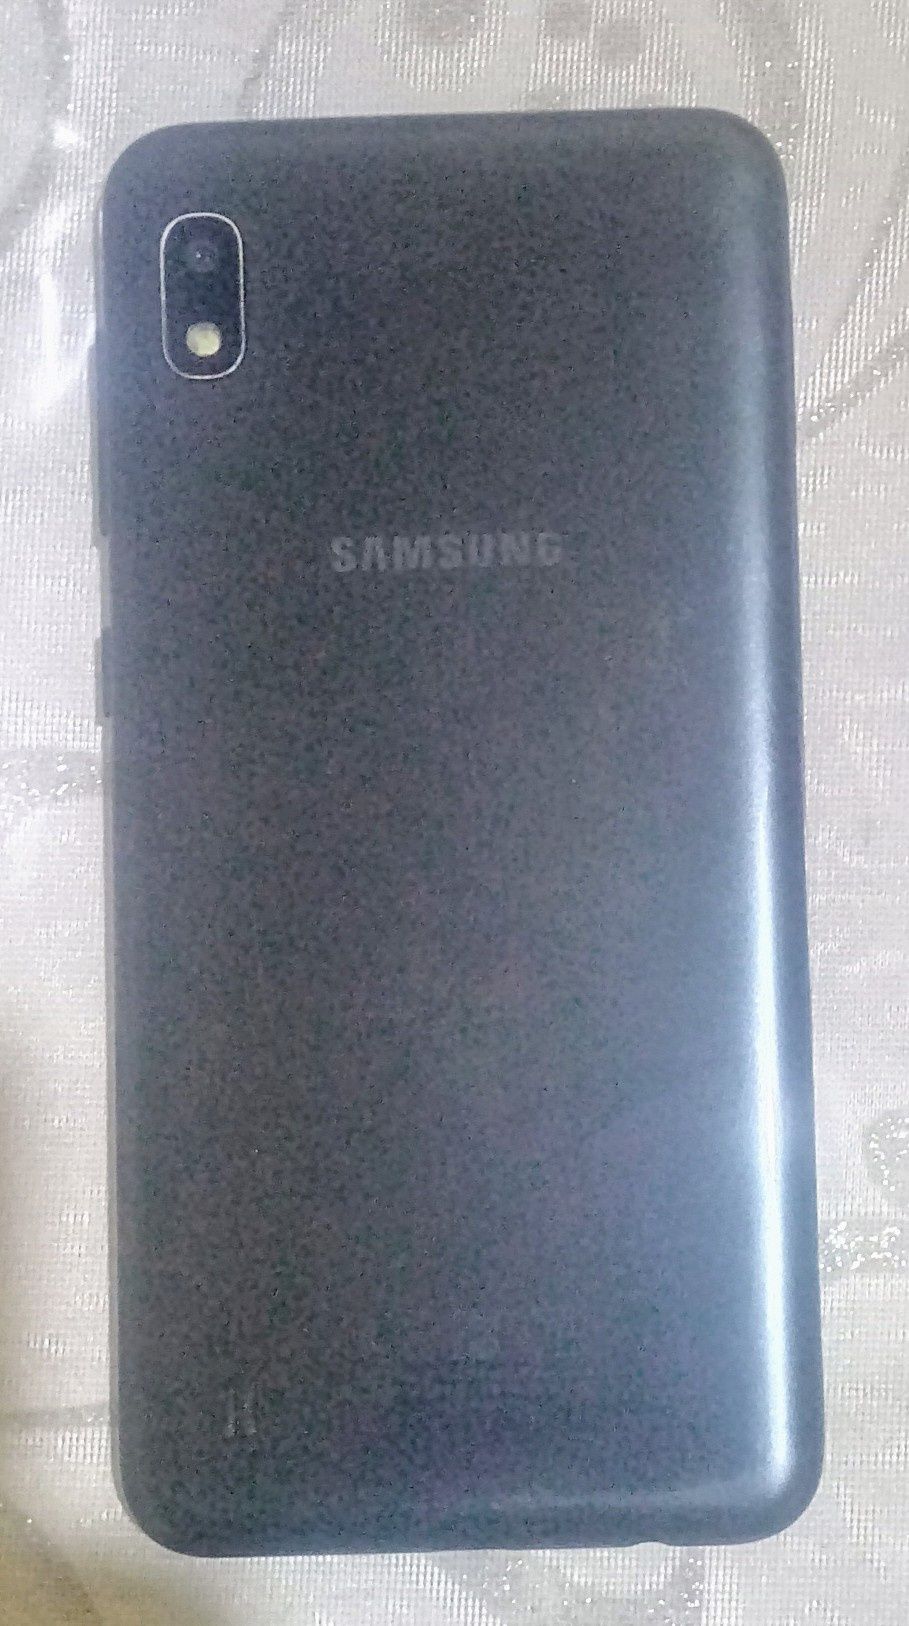 Samsung A 10 yaxshi ishlidi, aybi yoʻq